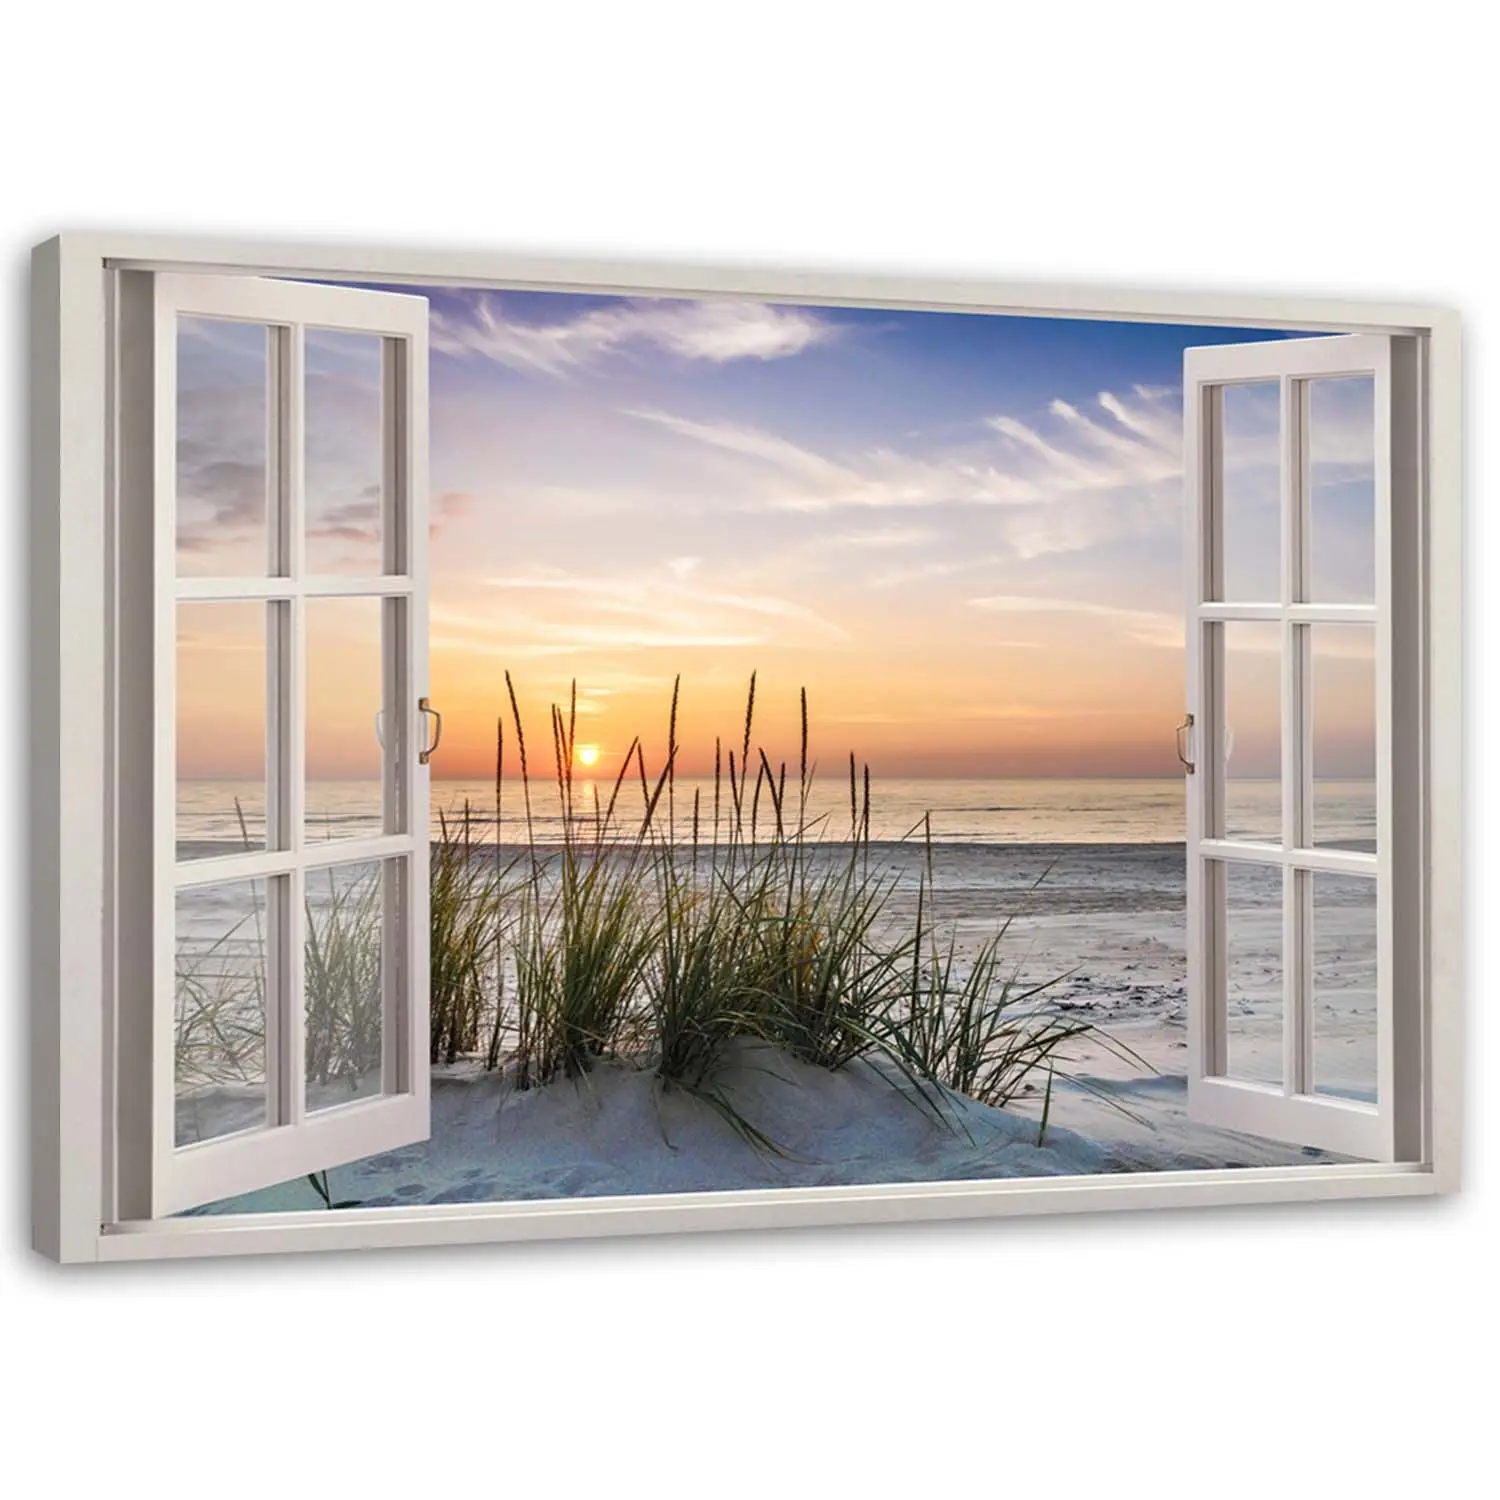 Bild Meer Strand Landschaft Fensterblick